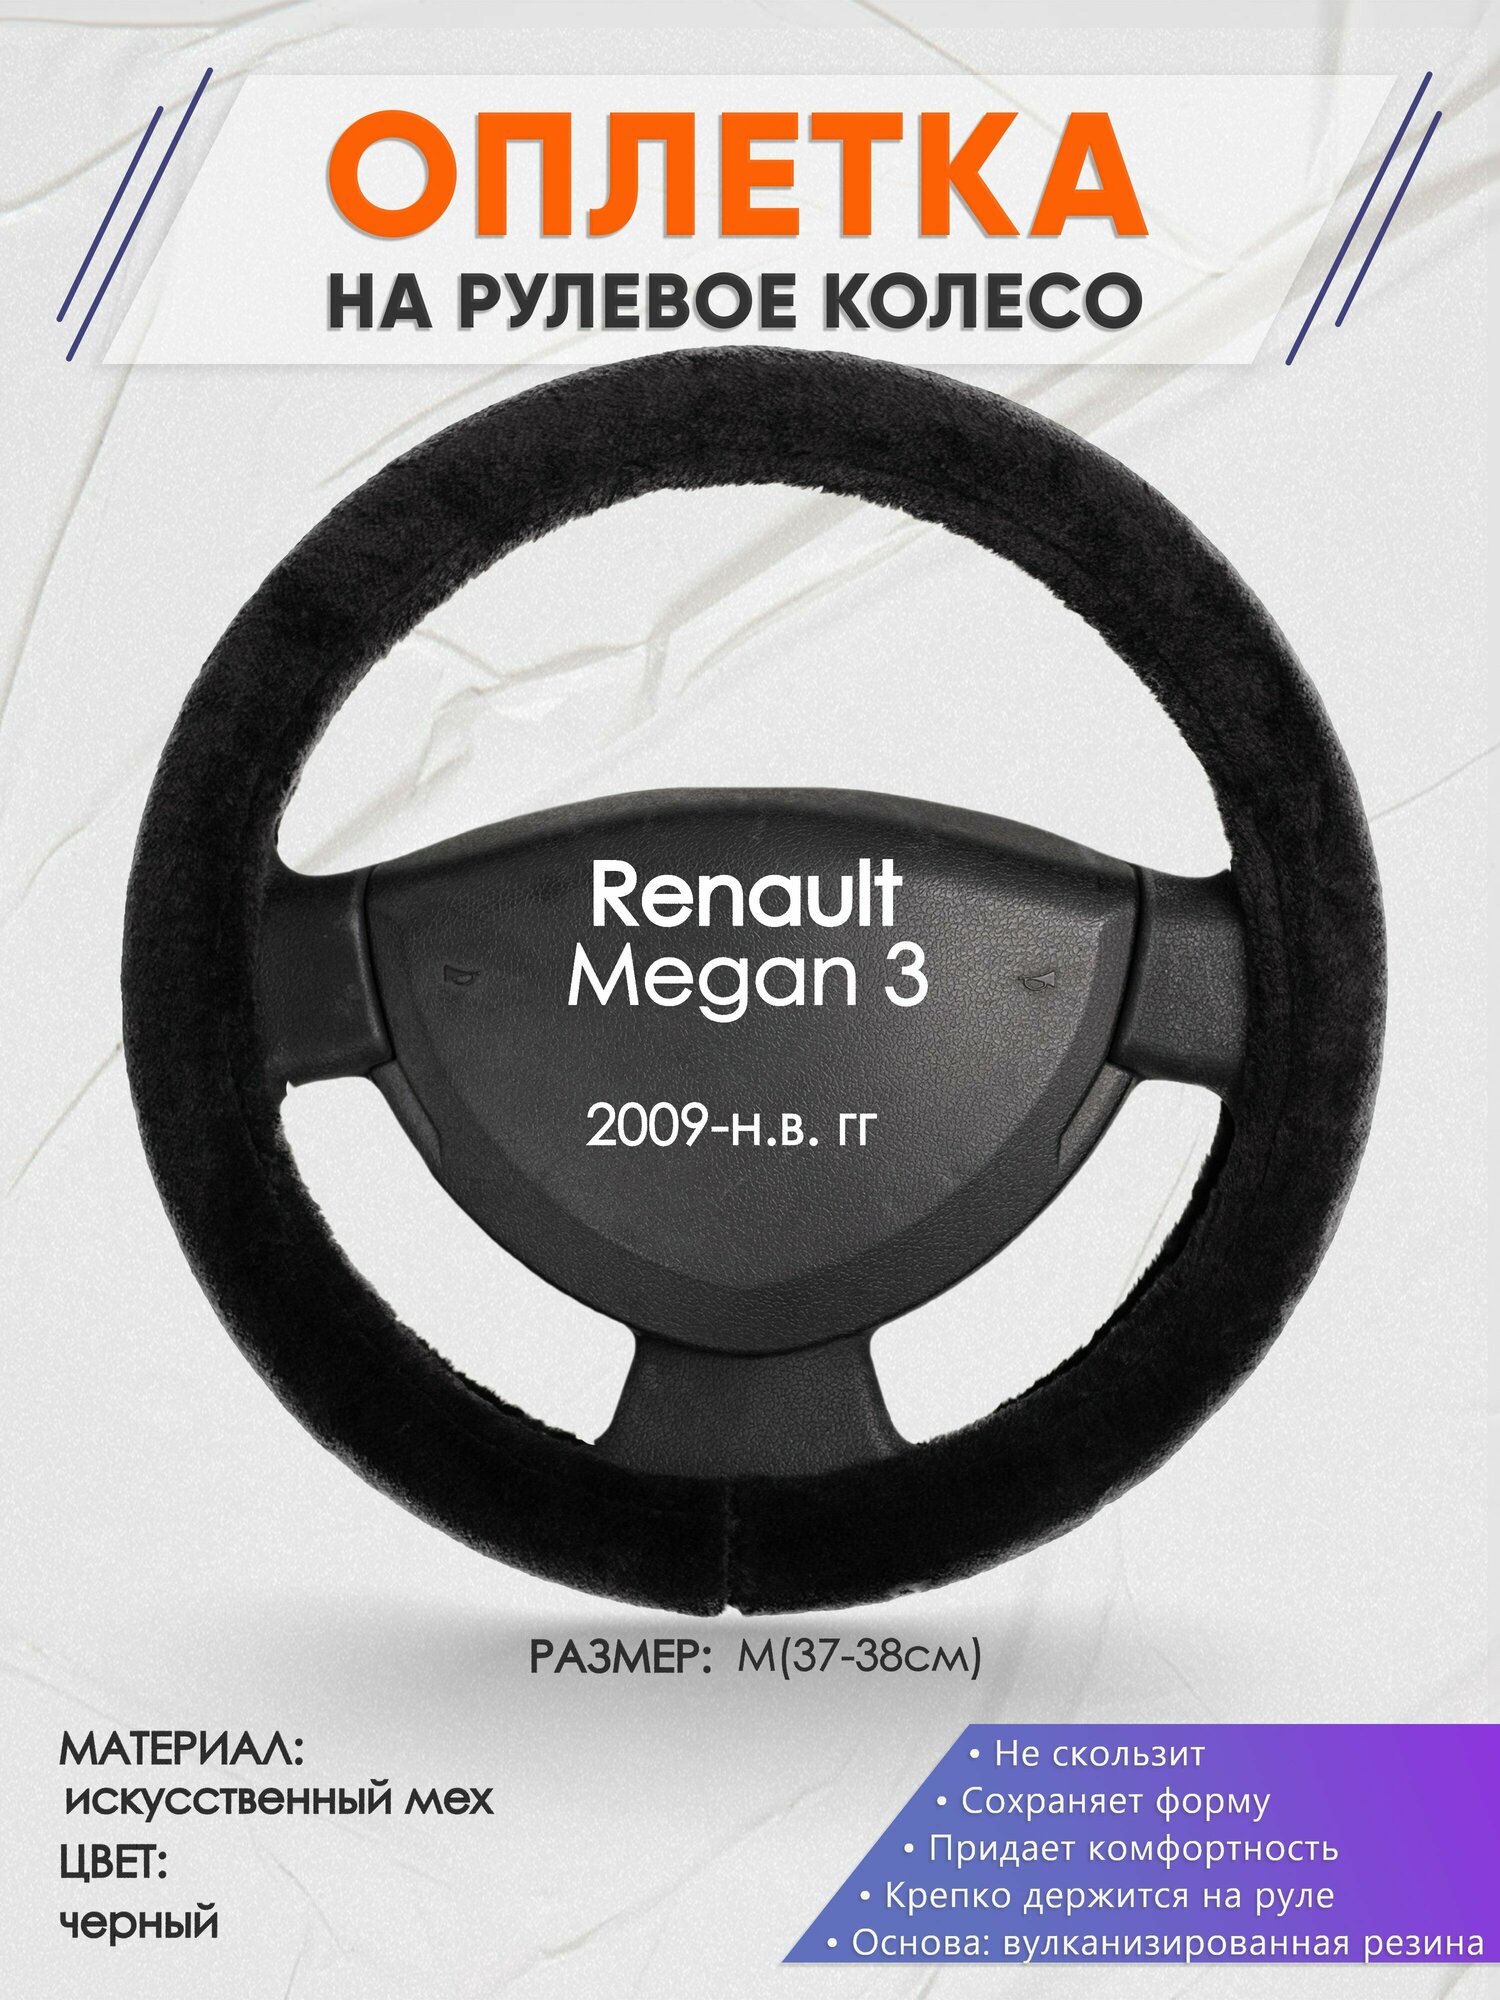 Оплетка на руль для Renault Megan 3(Рено Меган 3) 2009-н. в, M(37-38см), Искусственный мех 45